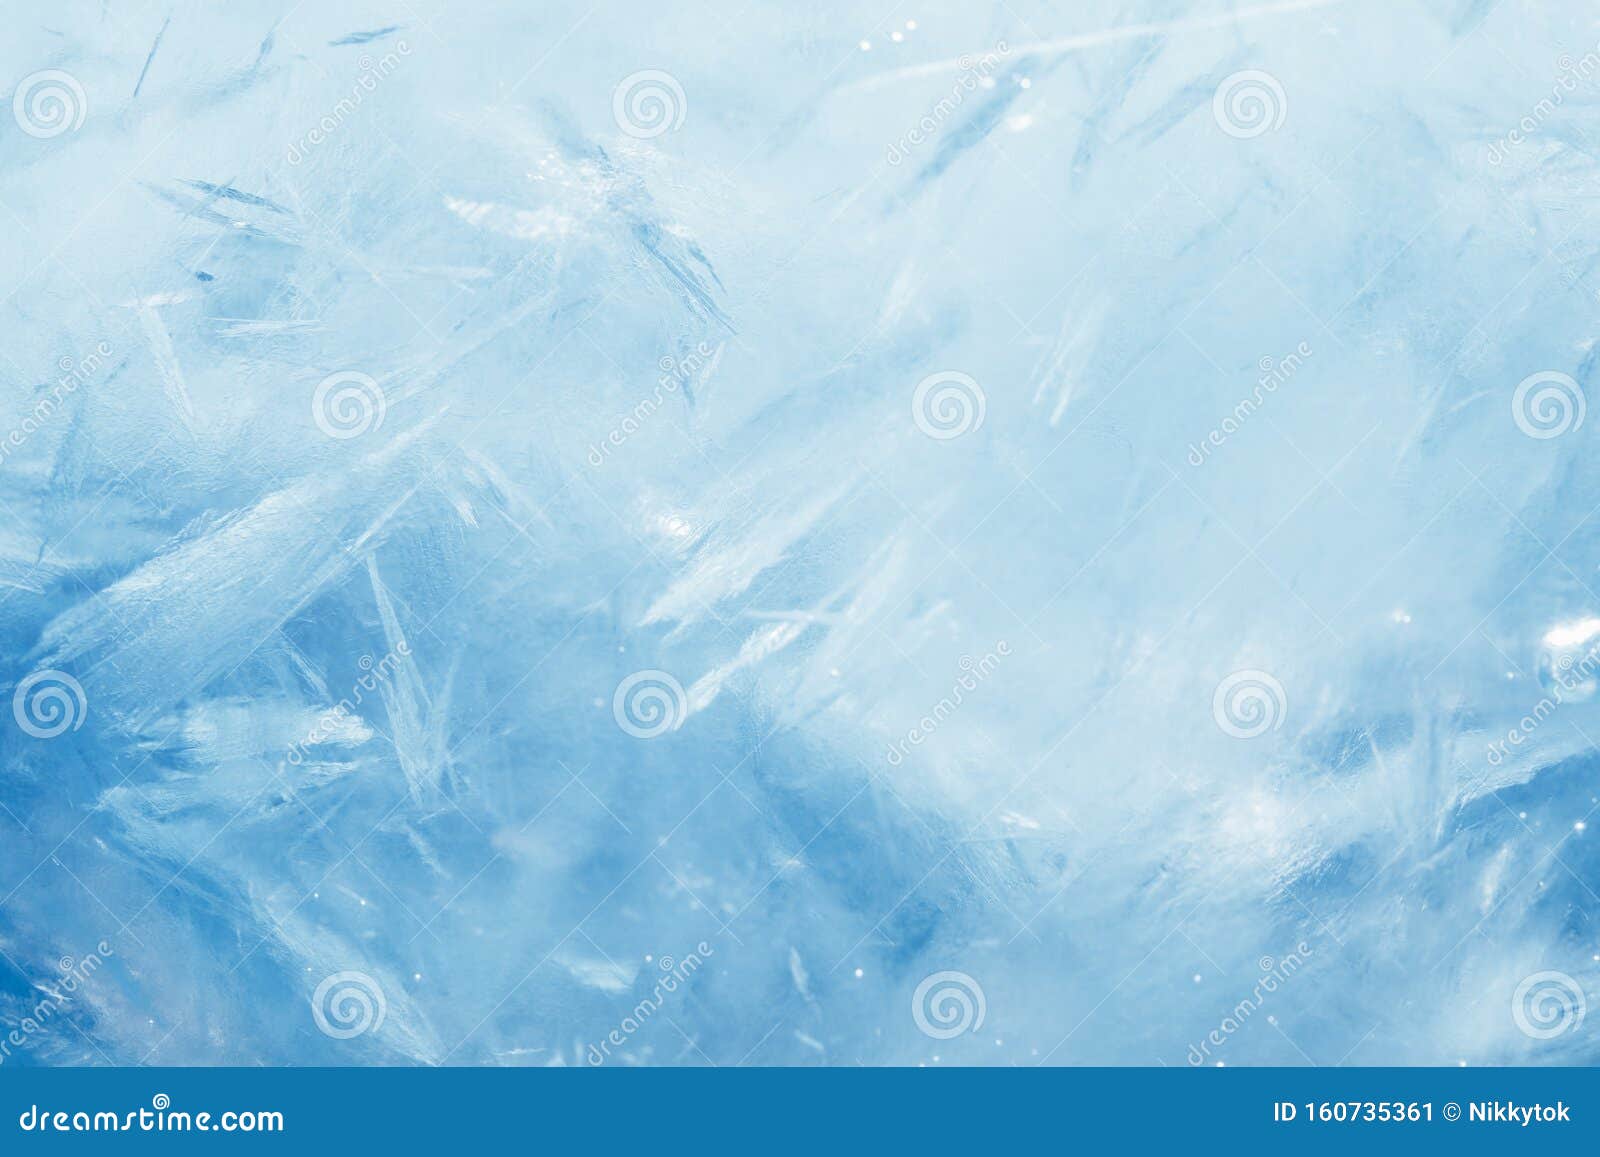 Blue Frozen Texture Stock Image: Hình ảnh về blue frozen texture stock image sẽ đem đến cho bạn cảm giác như đang trải qua những trải nghiệm vô cùng thú vị và tuyệt vời. Với những kết cấu độc đáo và bắt mắt, bạn sẽ không thể bỏ lỡ cơ hội khám phá những điều kỳ diệu của thiên nhiên.